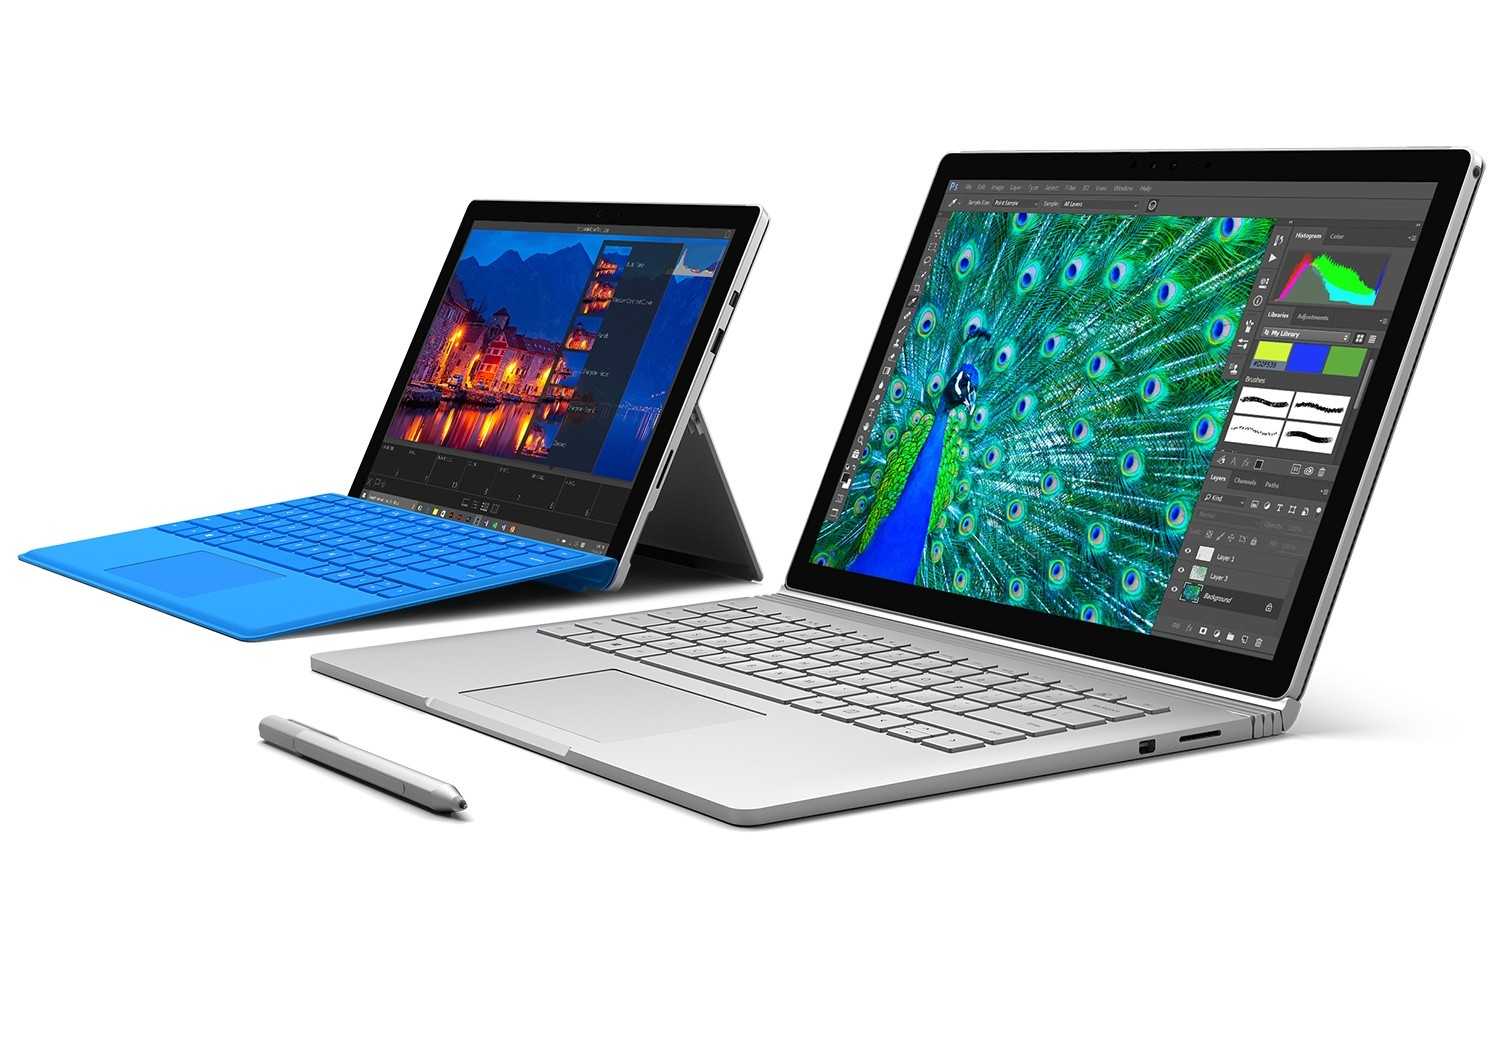 Microsoft surface pro 2 512gb - купить , скидки, цена, отзывы, обзор, характеристики - планшеты